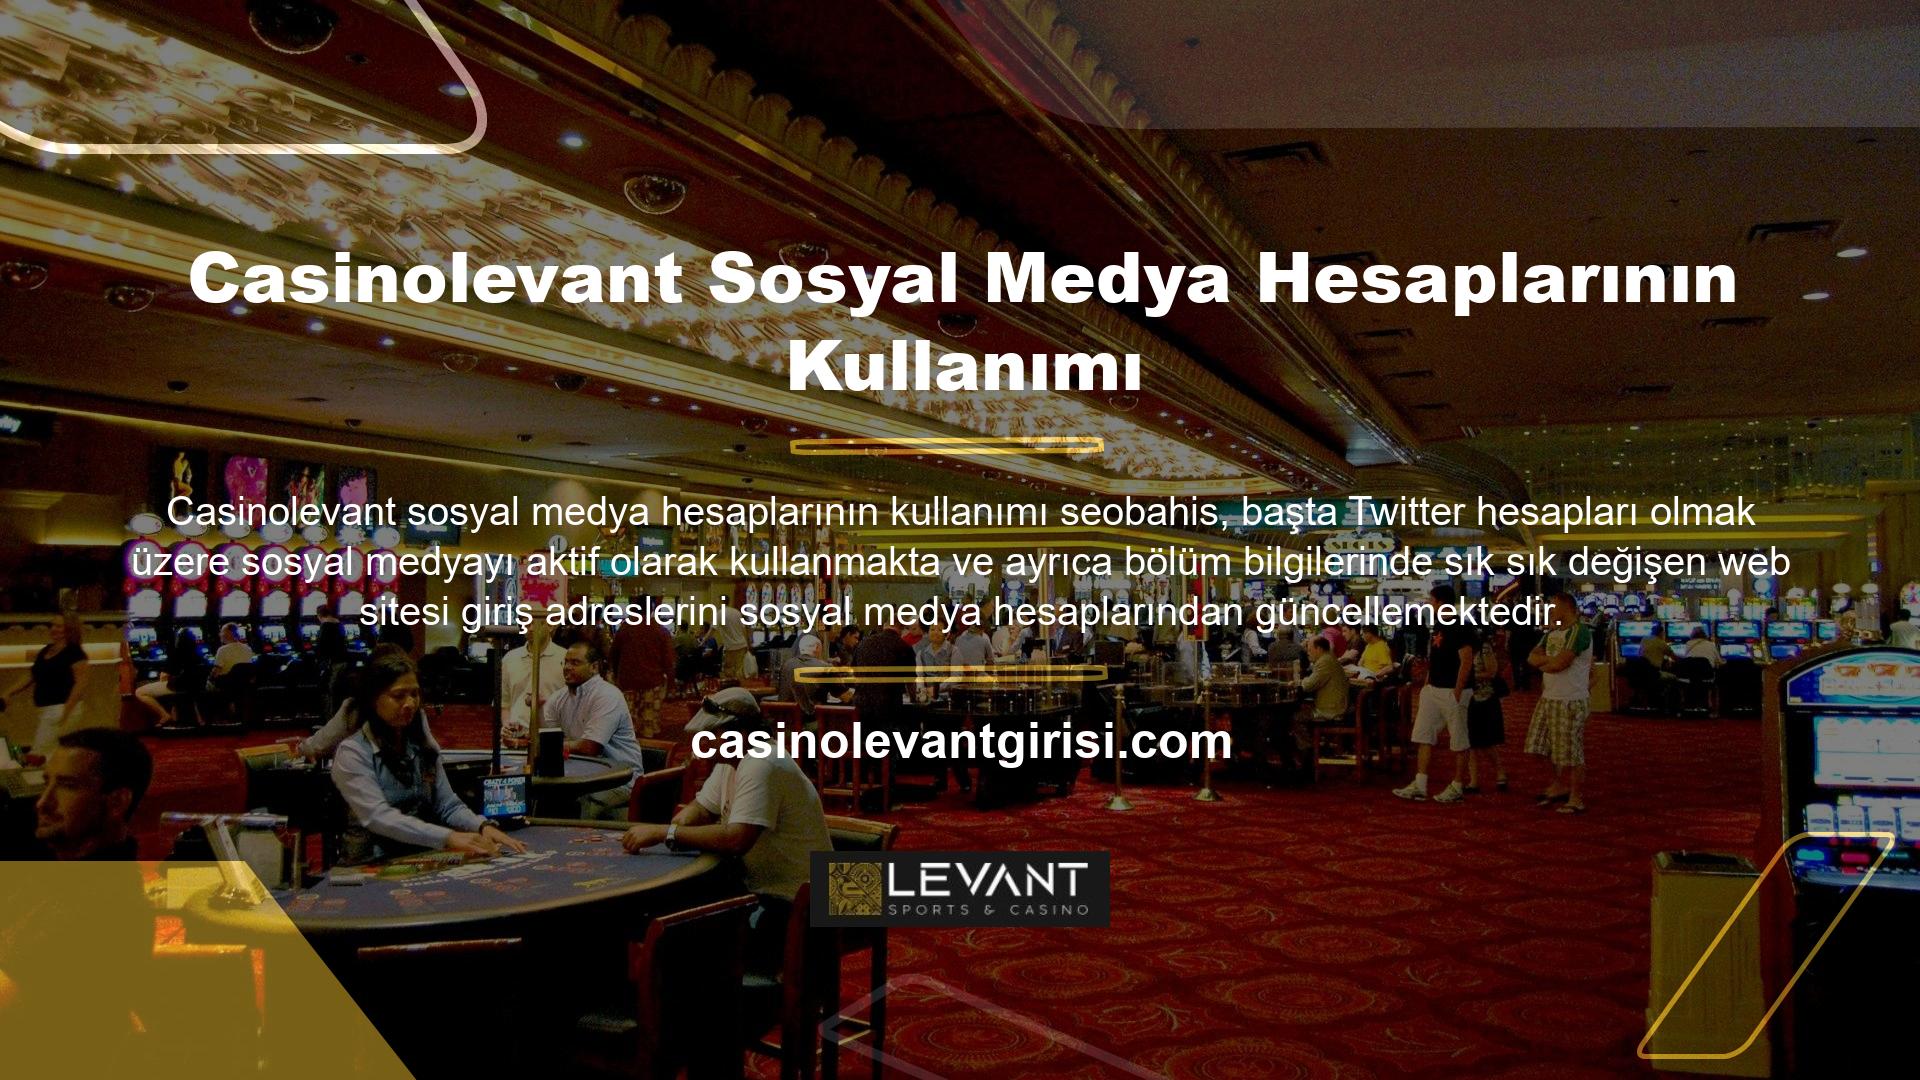 Casinolevant, Türkiye’deki kullanıcılar için 7/24 hizmet veren uzman bir çevrimiçi destek hizmet hattına sahiptir